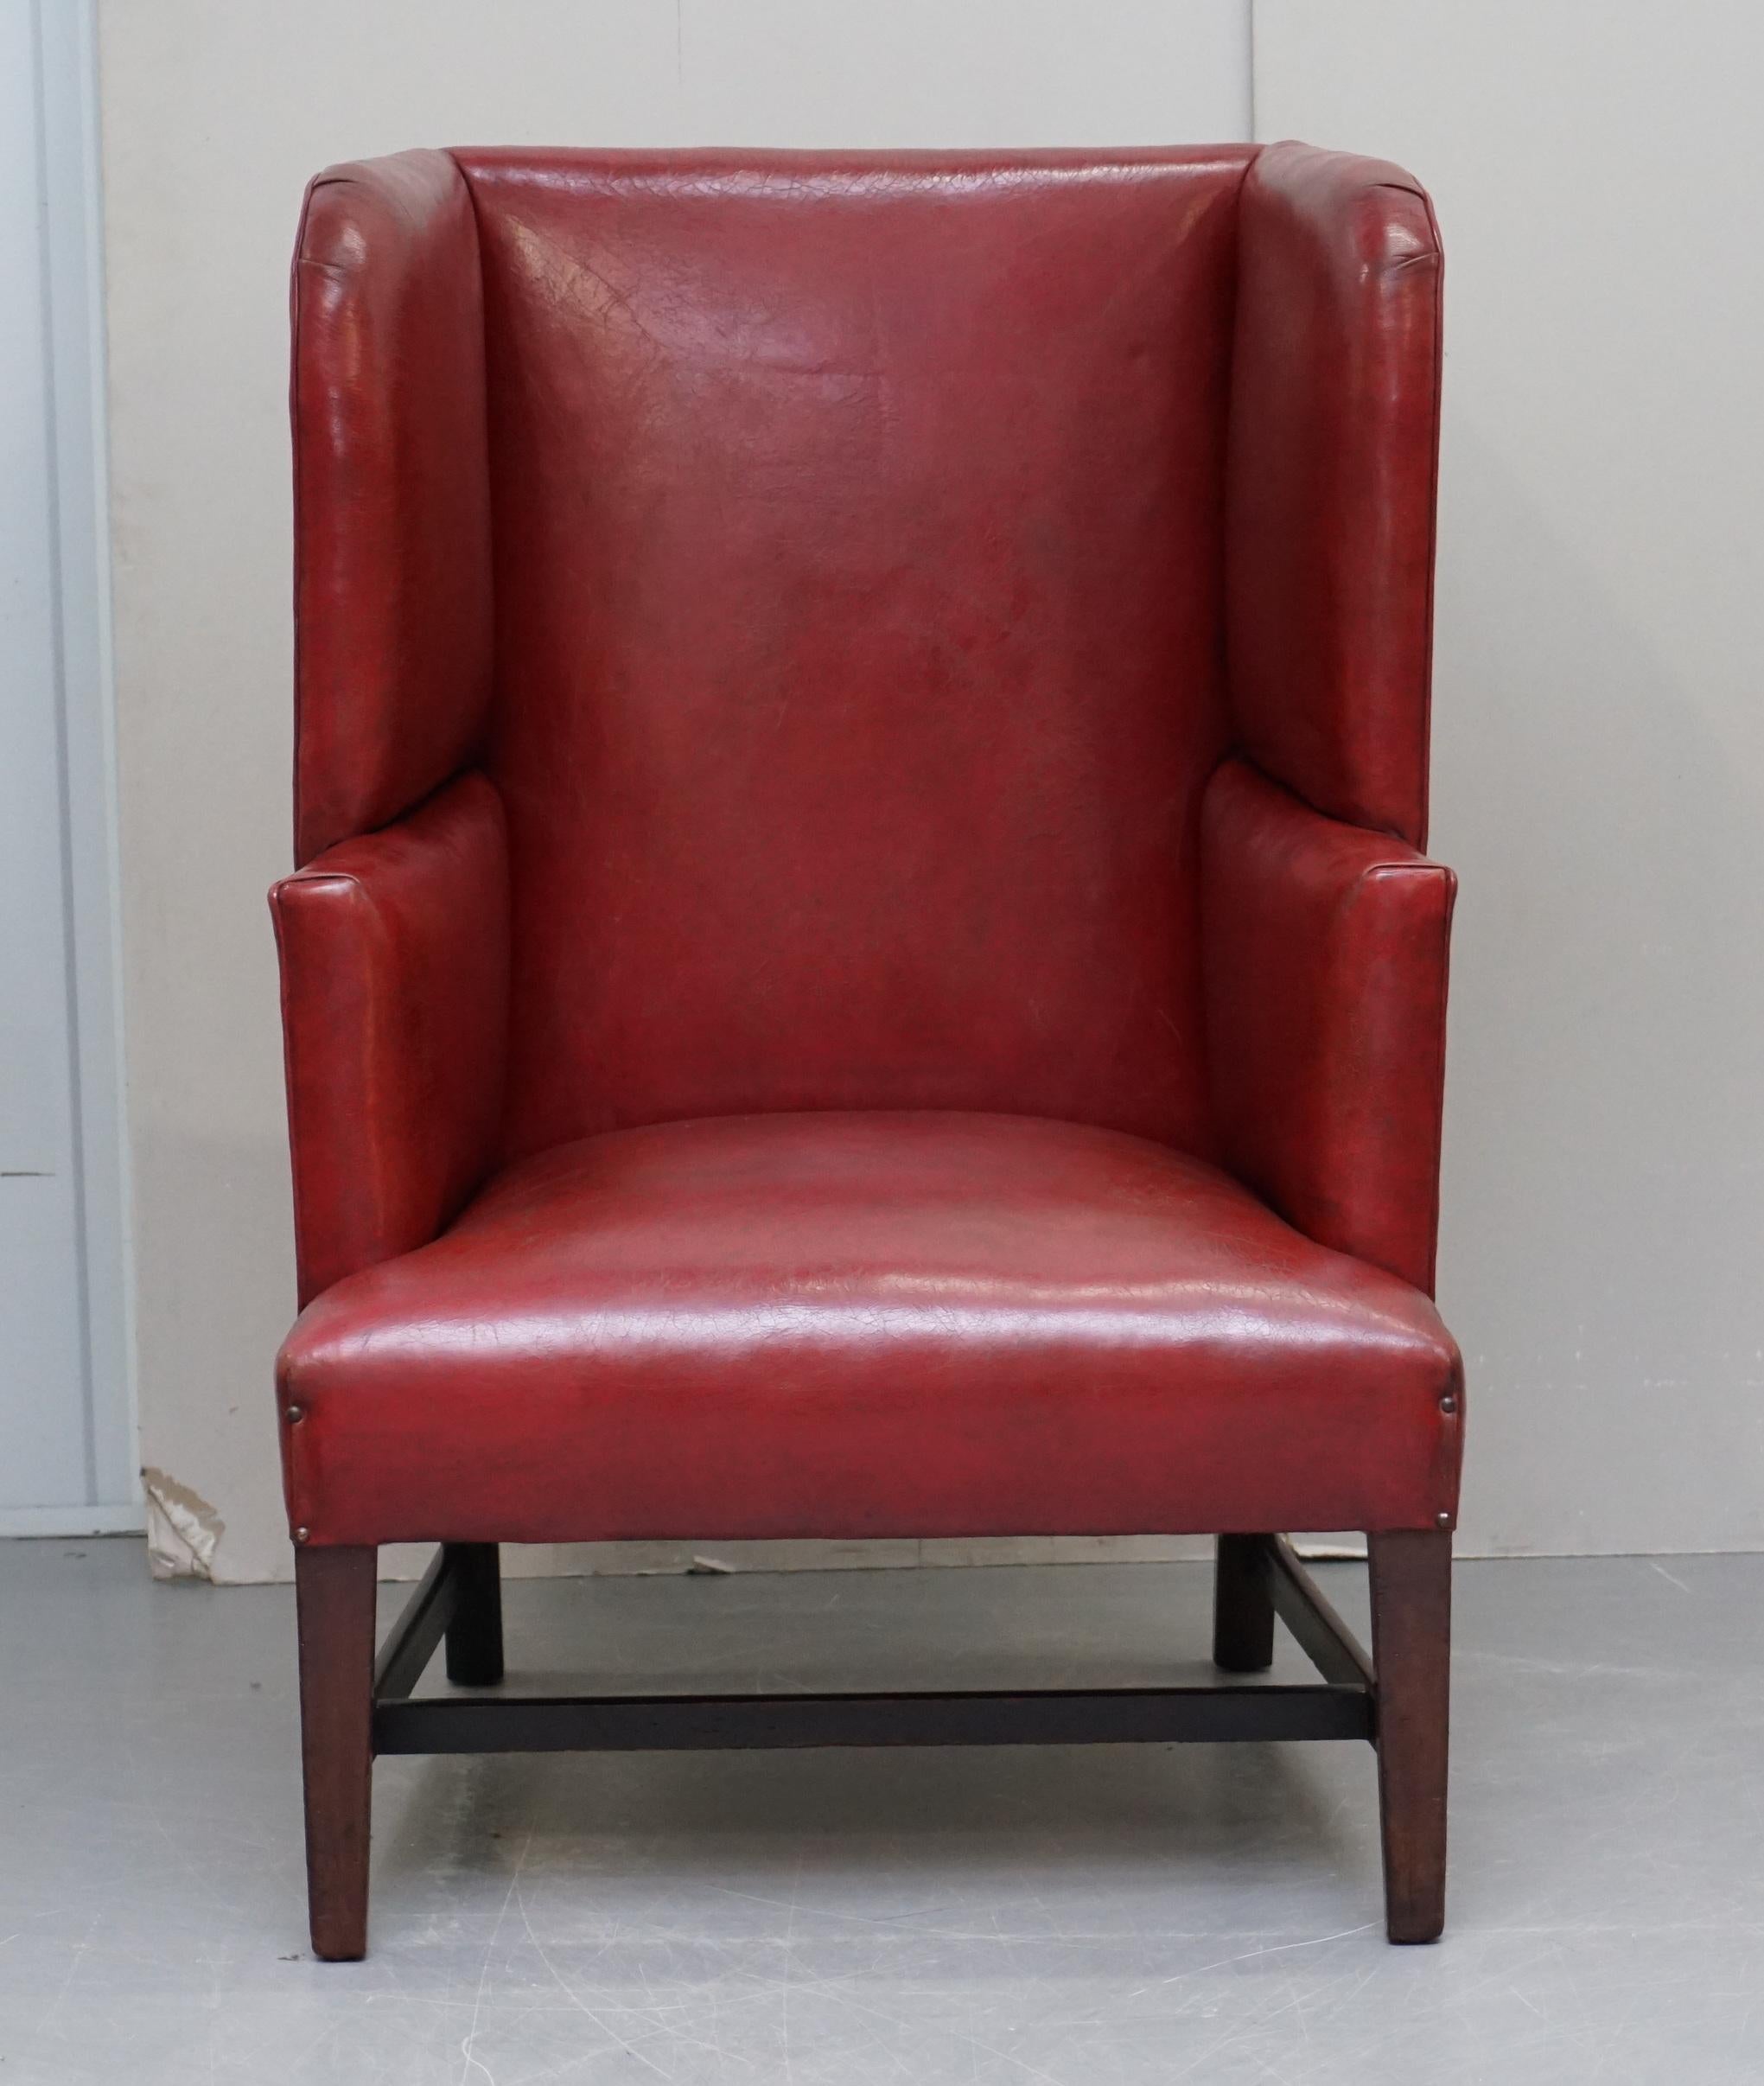 Nous sommes ravis d'offrir à la vente ce magnifique fauteuil Porters à dos ailé de l'époque géorgienne, vers 1780, en cuir rouge.

Une pièce très belle et très décorative. Il s'agit d'un fauteuil géorgien original datant d'environ 1780, la